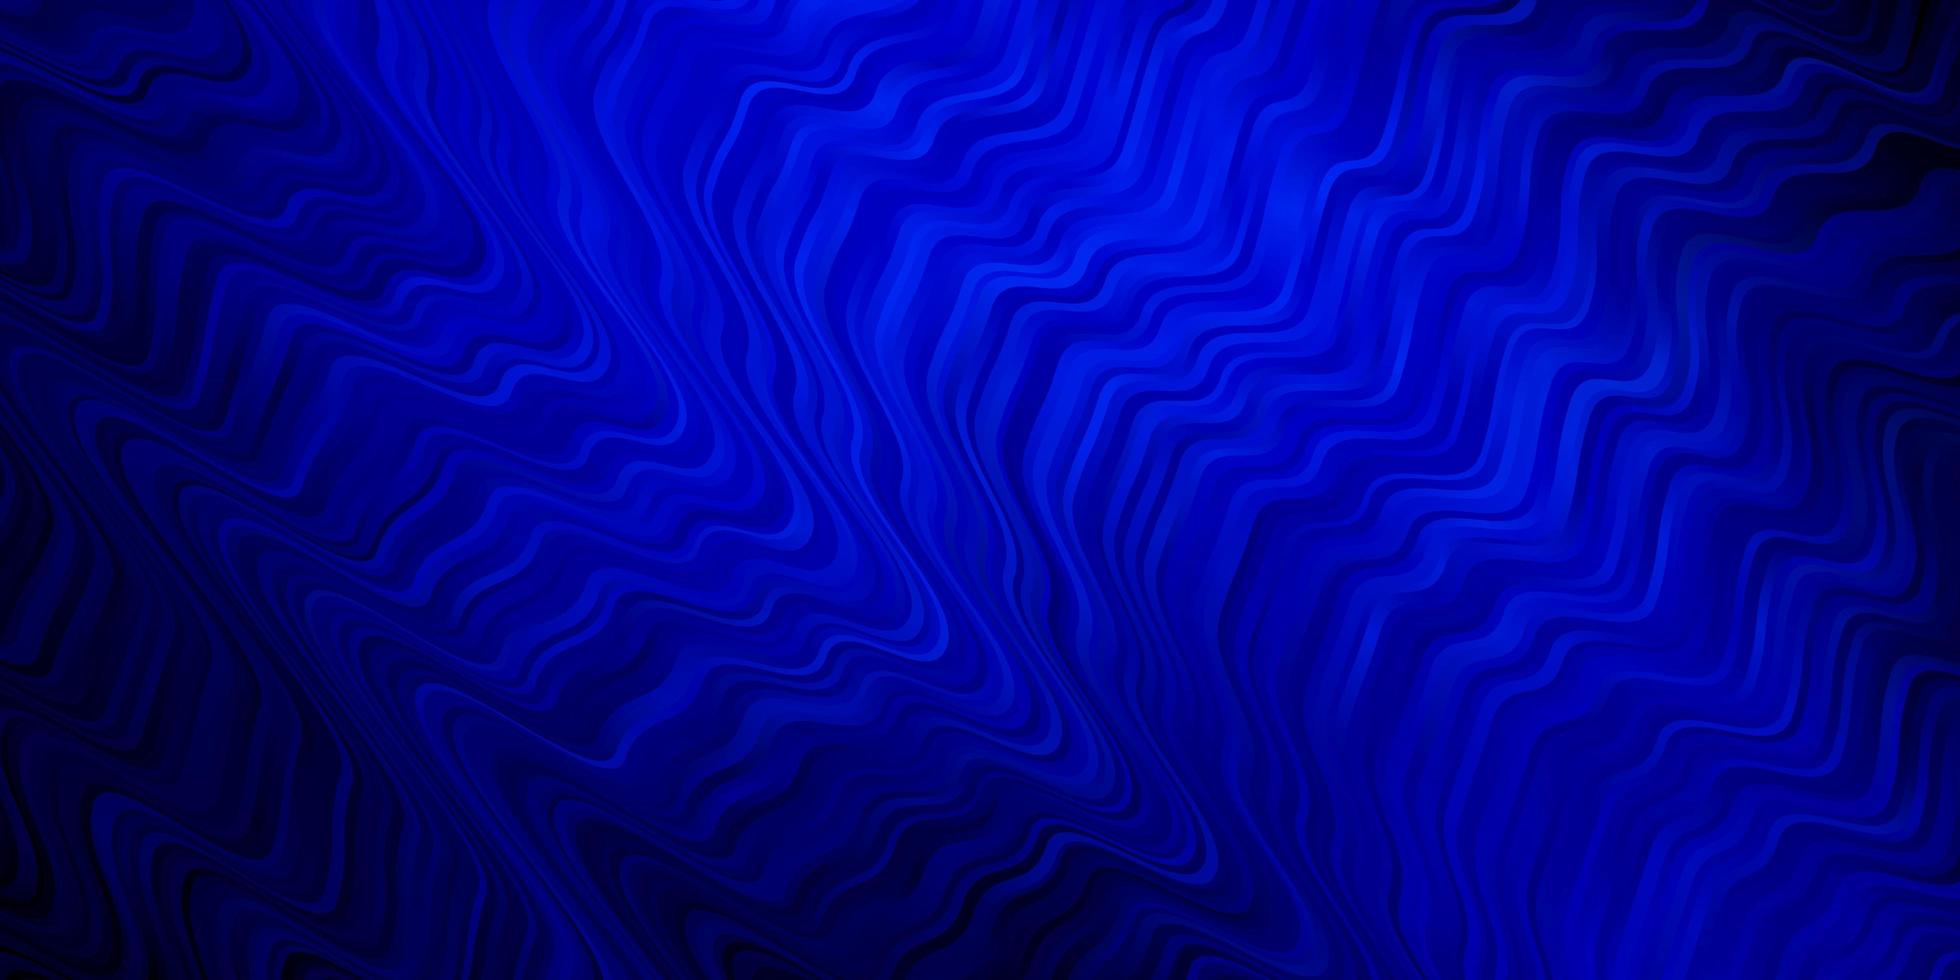 mörkblått mönster med kurvor. vektor